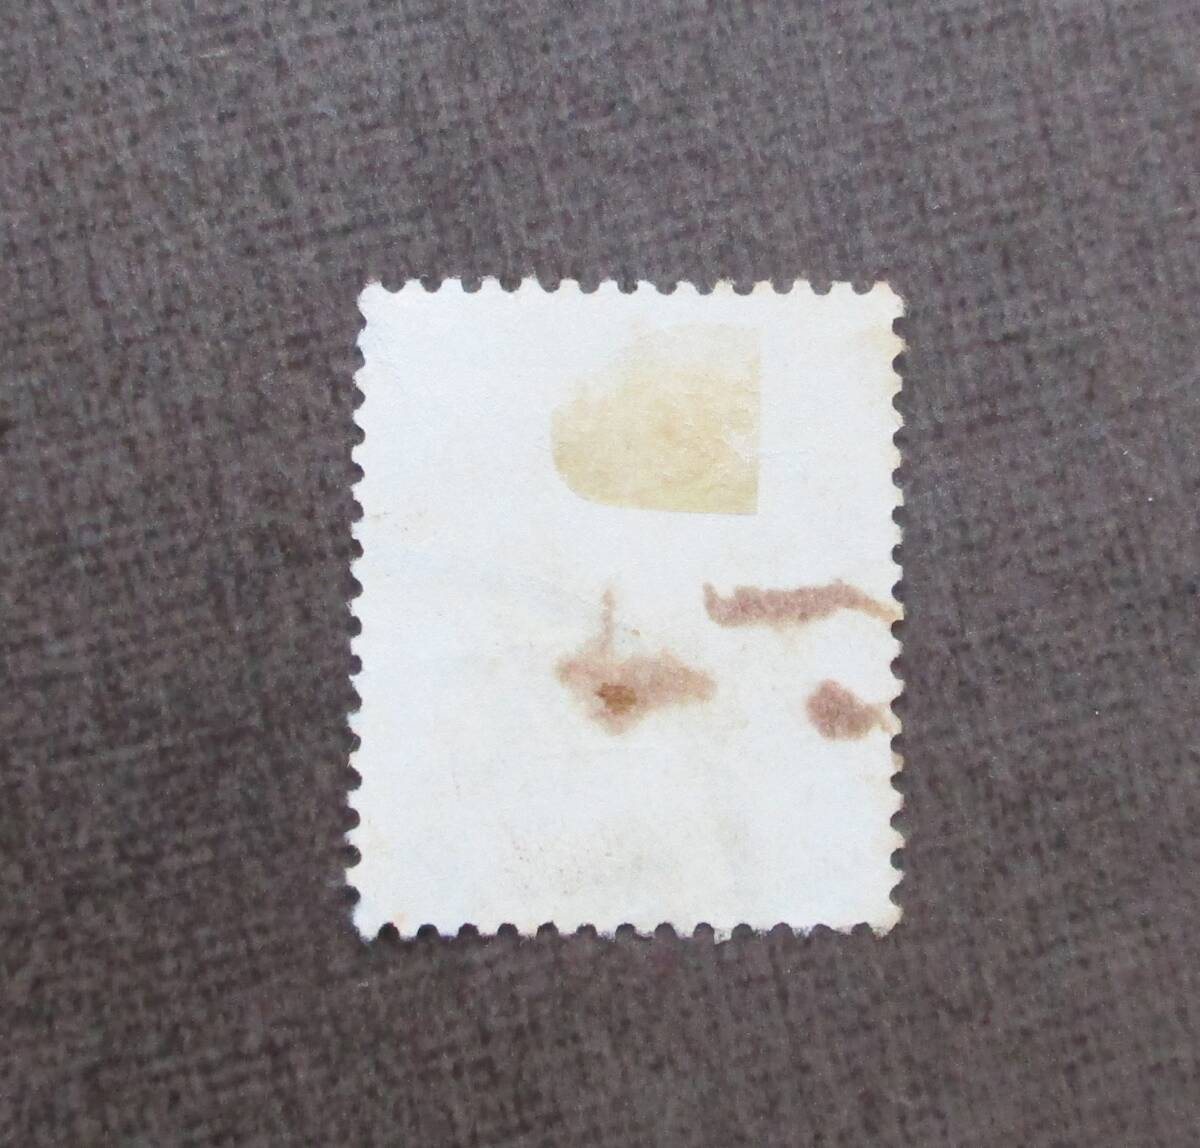 満州切手   さくらカタログ＃39  3f on 16f  使用済  中古品の画像2